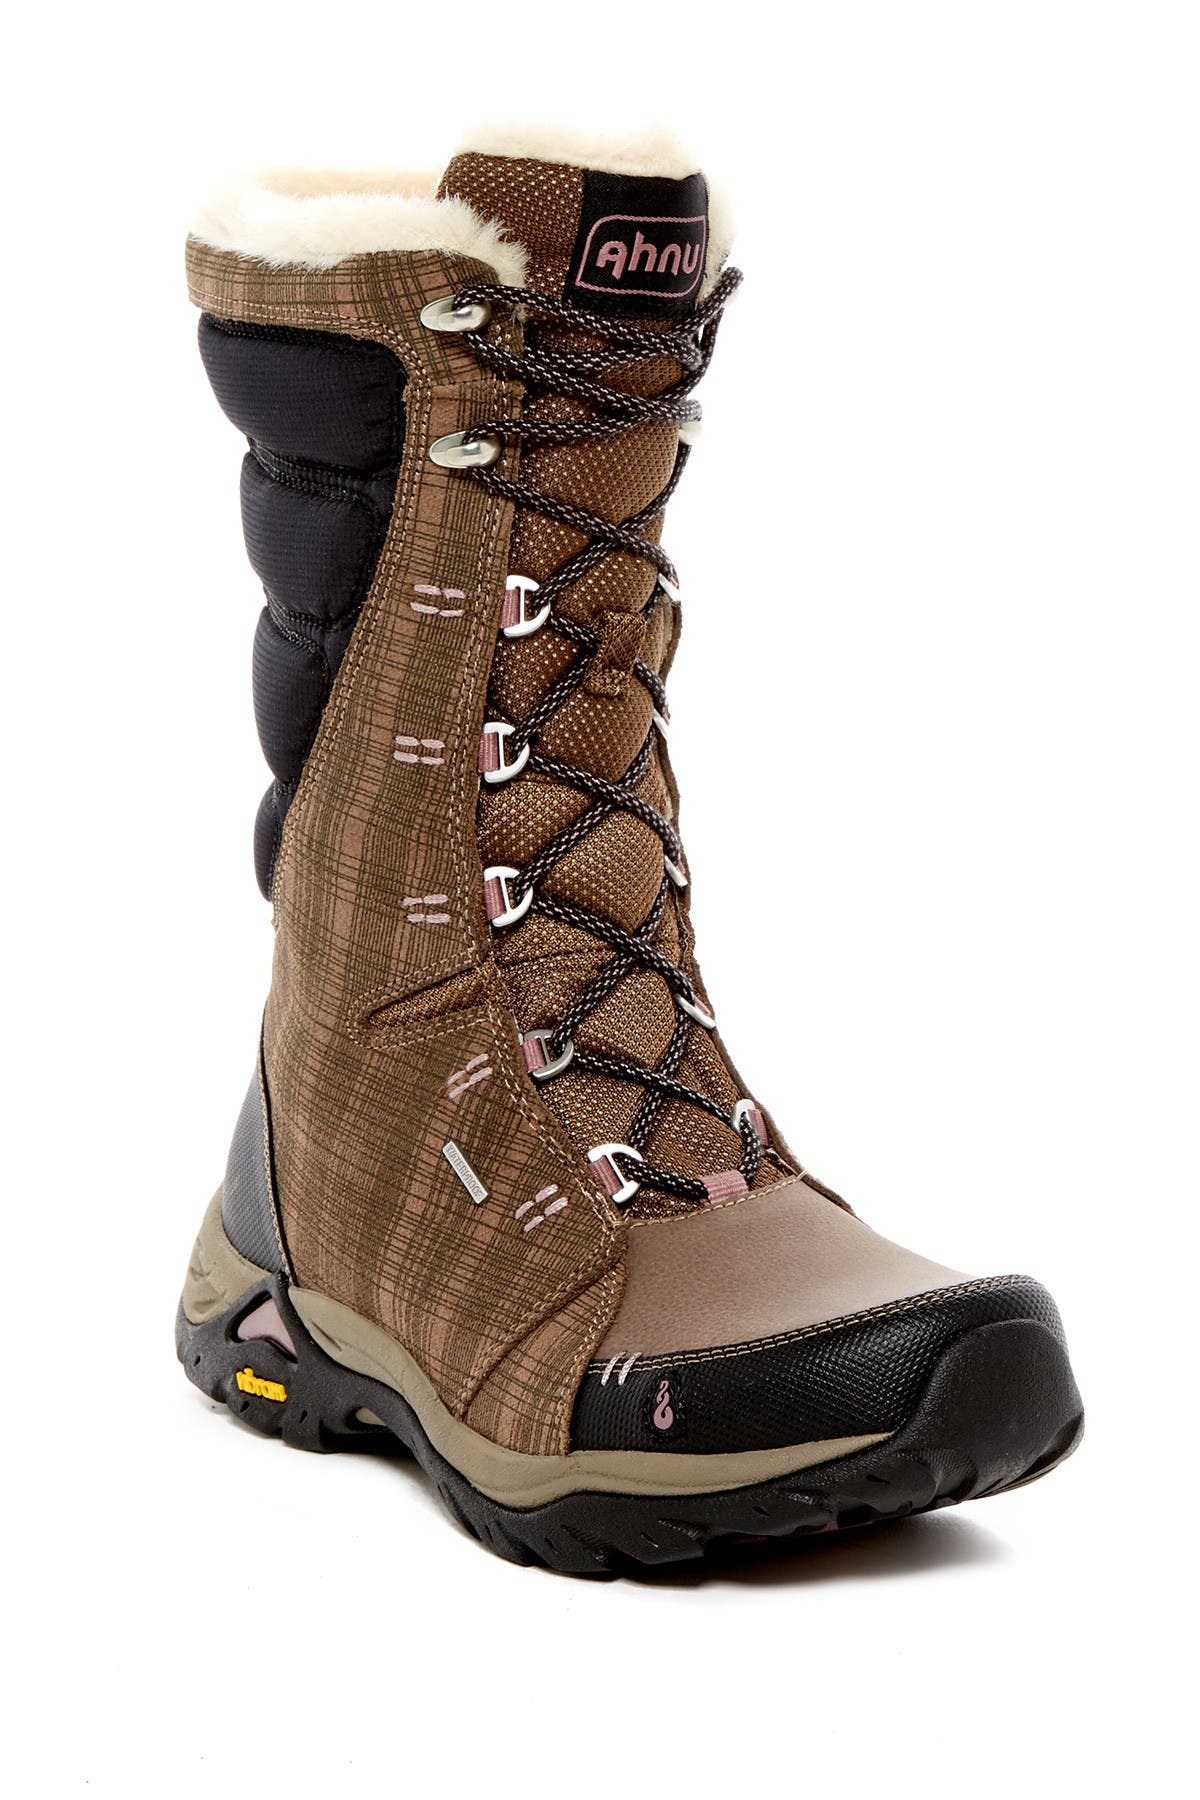 ahnu women's northridge insulated waterproof hiking boot